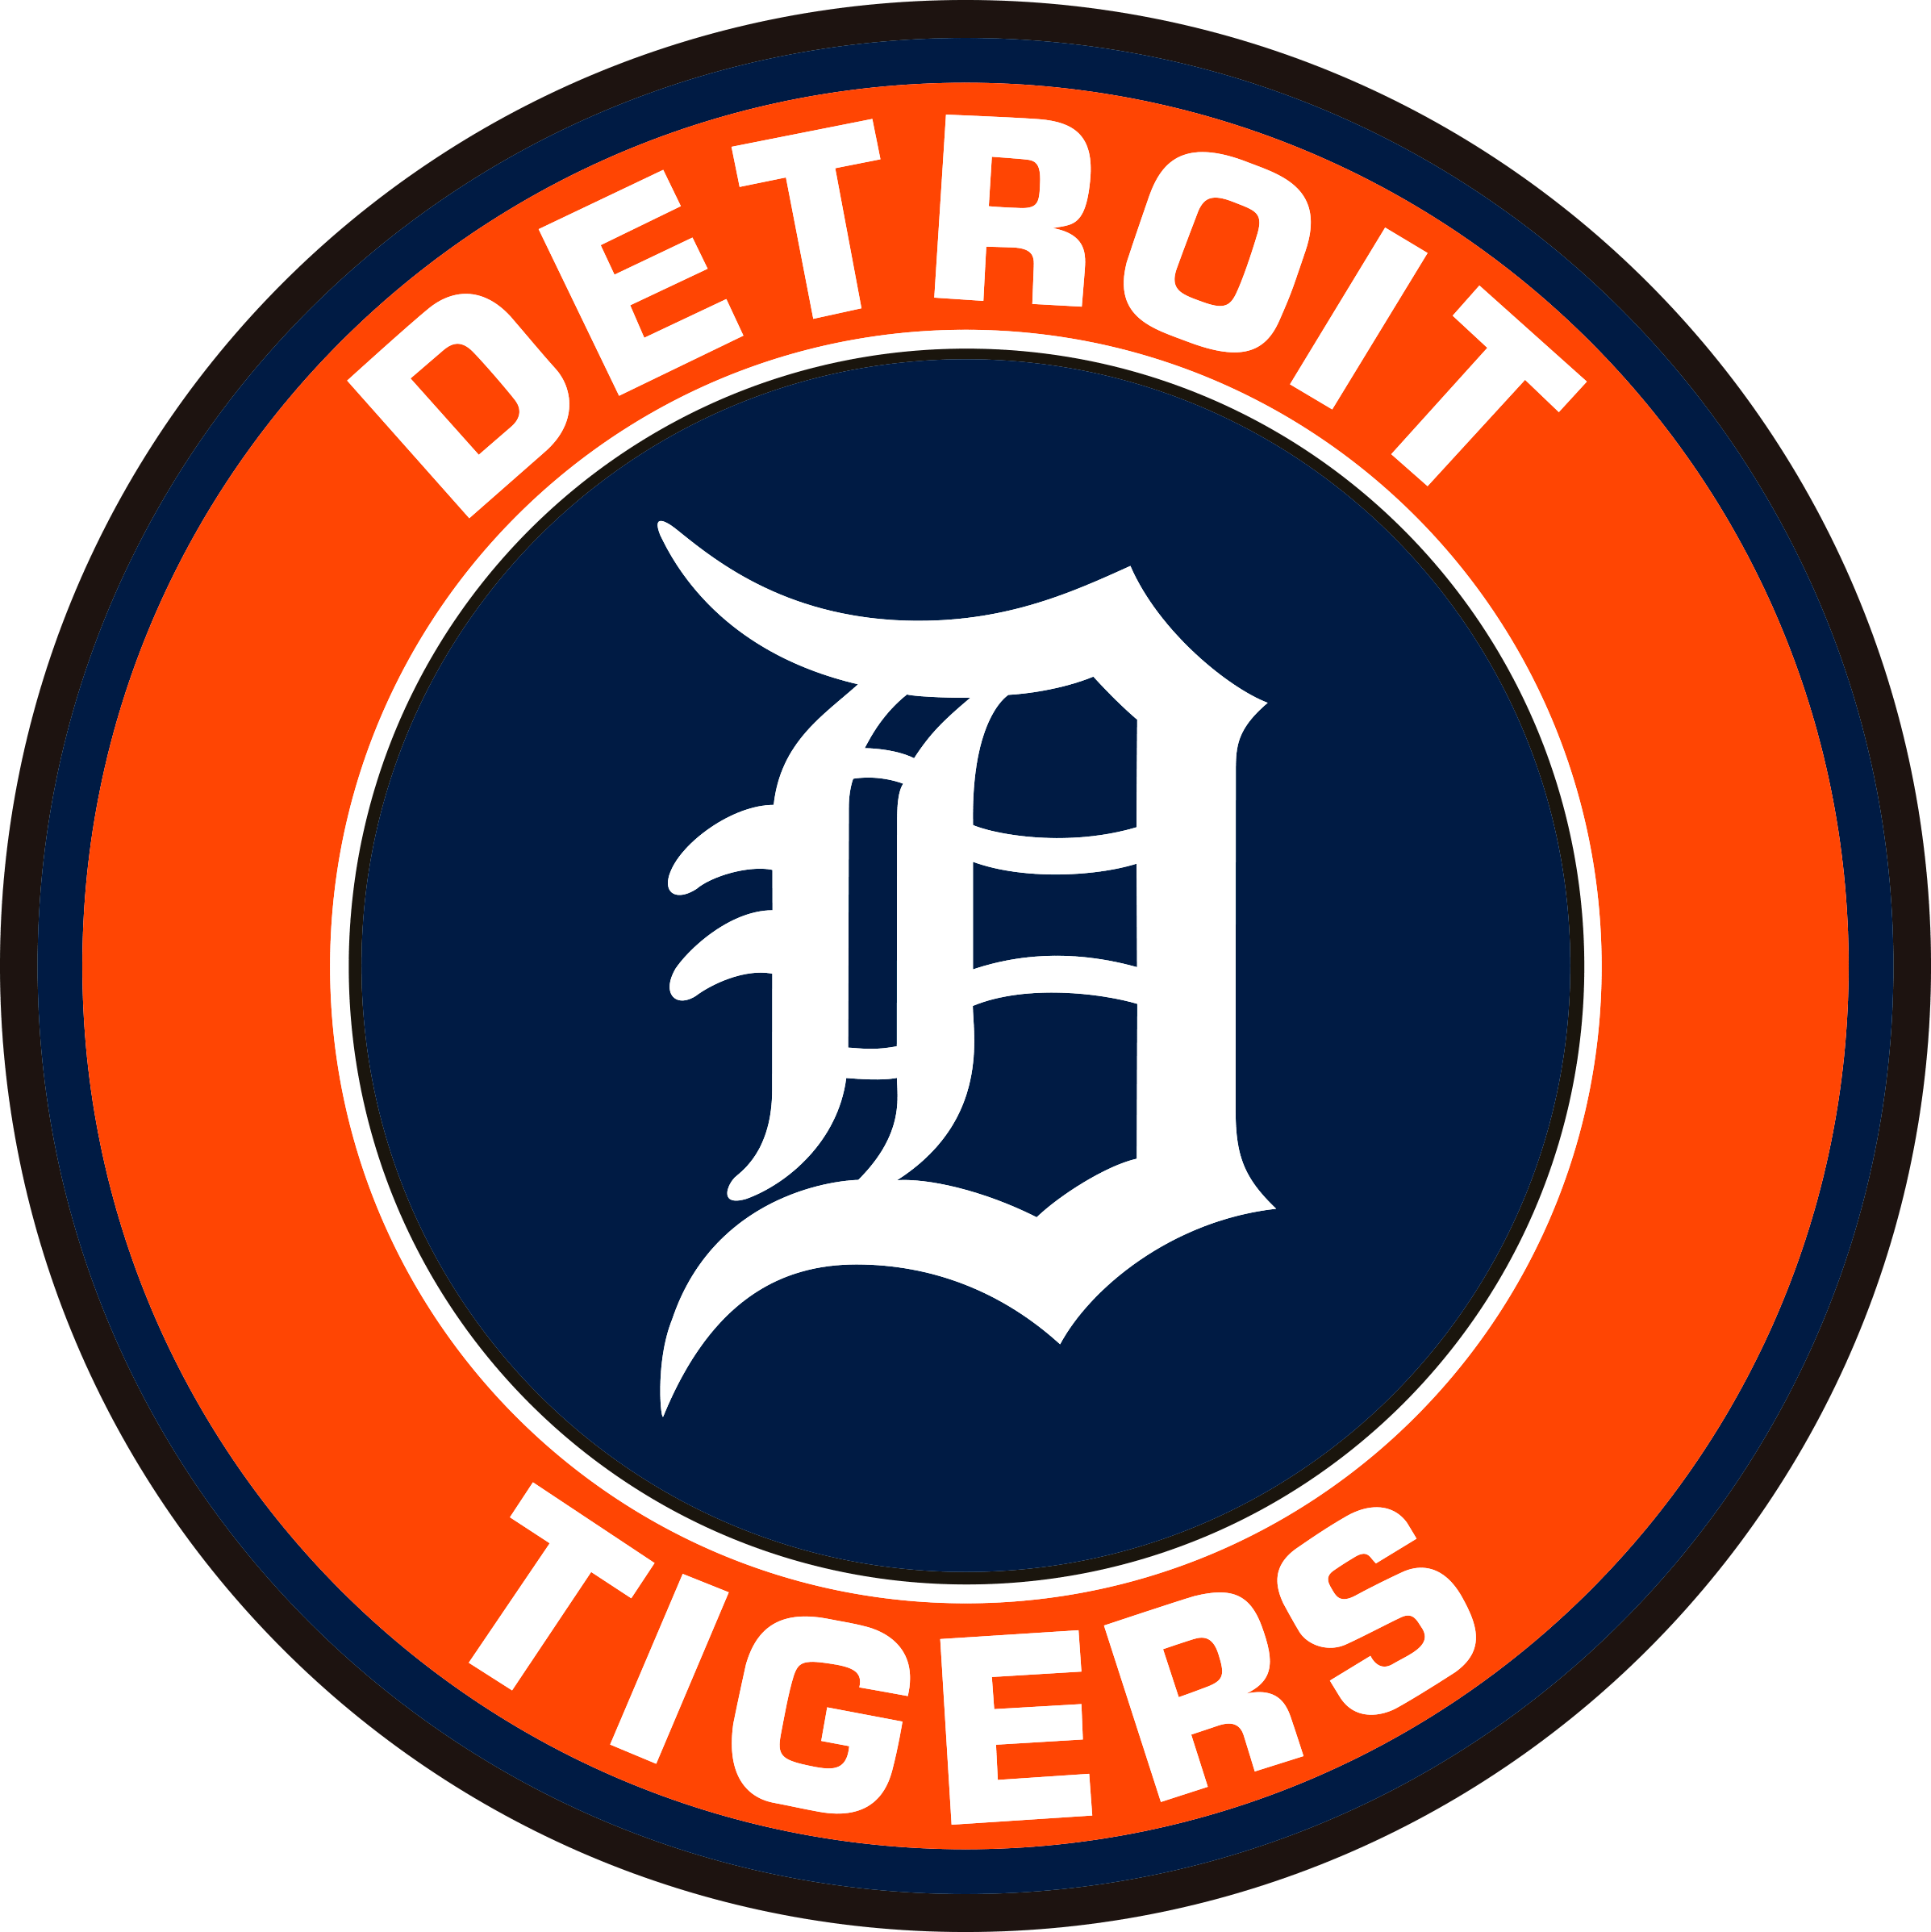 Detroit Tigers Text Logo 2 svg, mlb svg, eps, dxf, png, digital